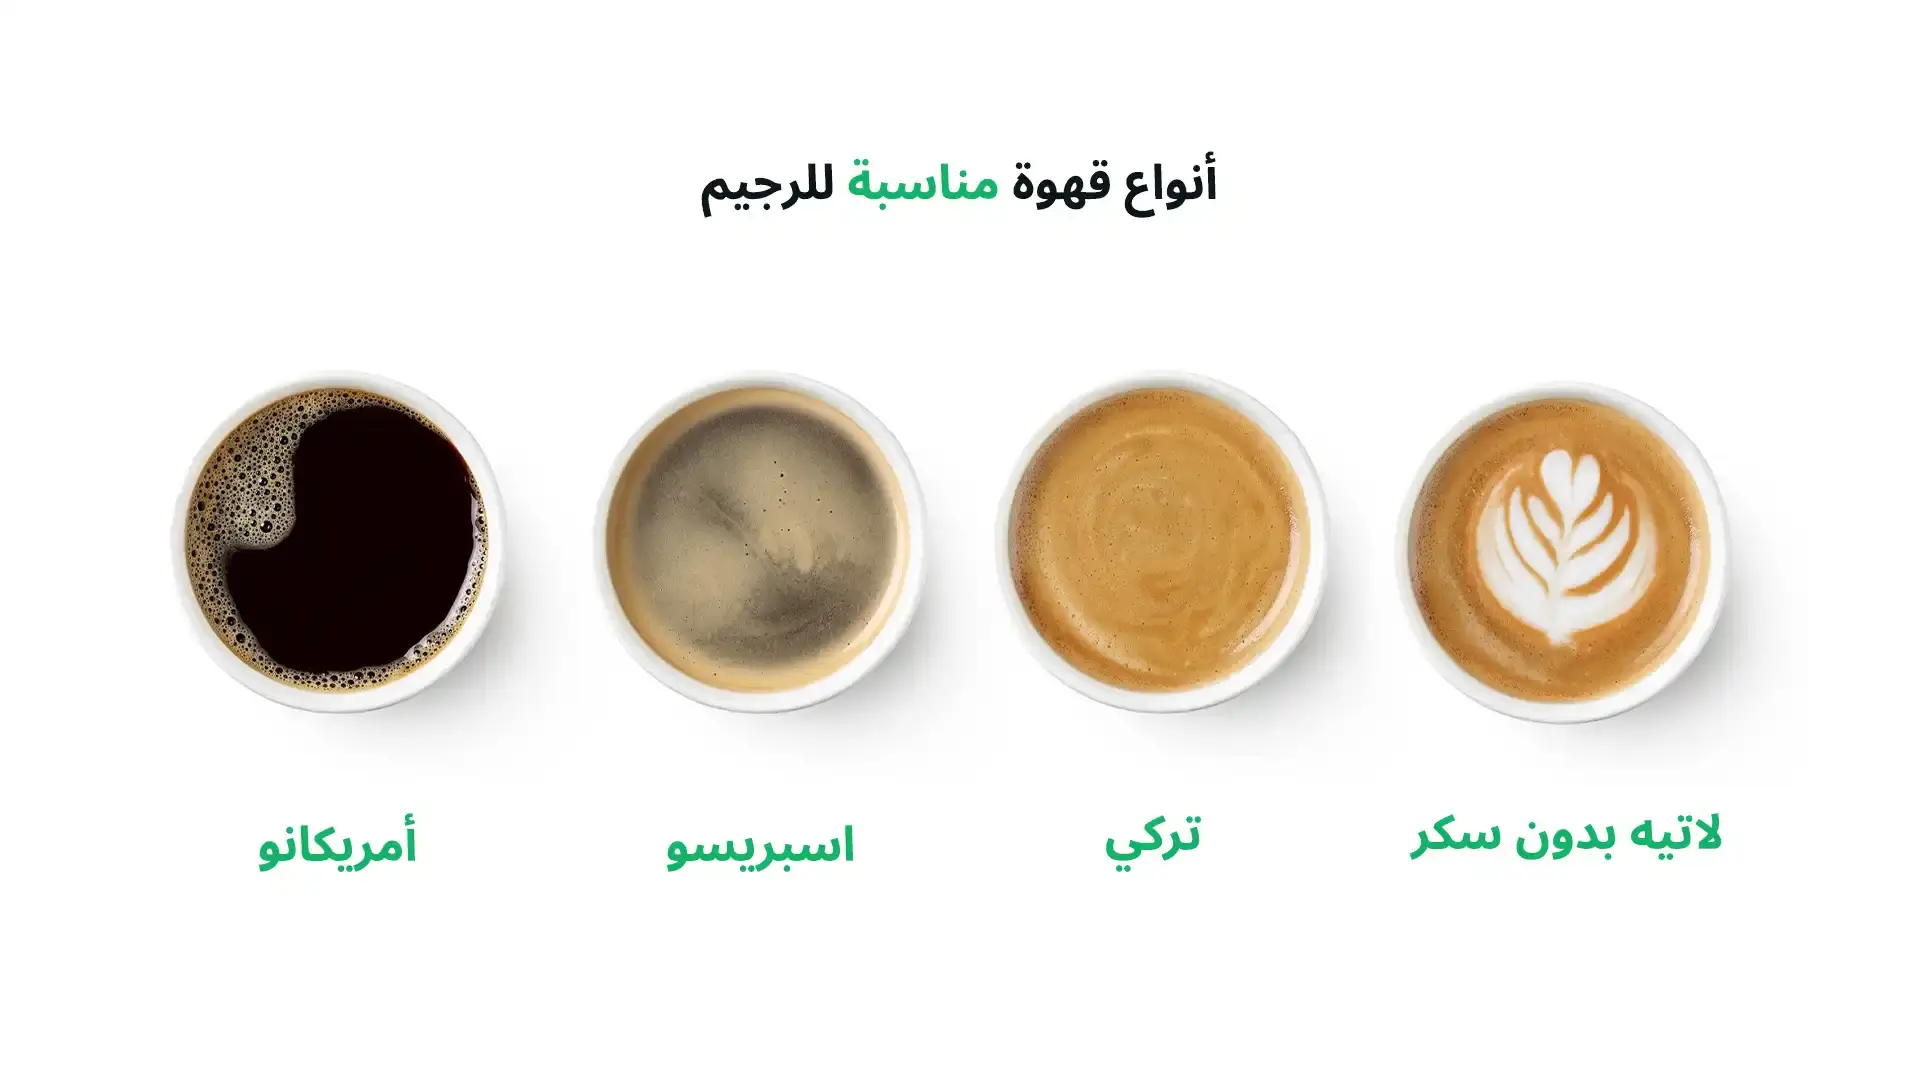 صورة توضيحية انفوغراف عن أنواع القهوة المناسبة للرجيم يظعر في الصورة أربع أنواع من القهوة التي تعتبر قليلة السعرات ومناسبة للرجيم